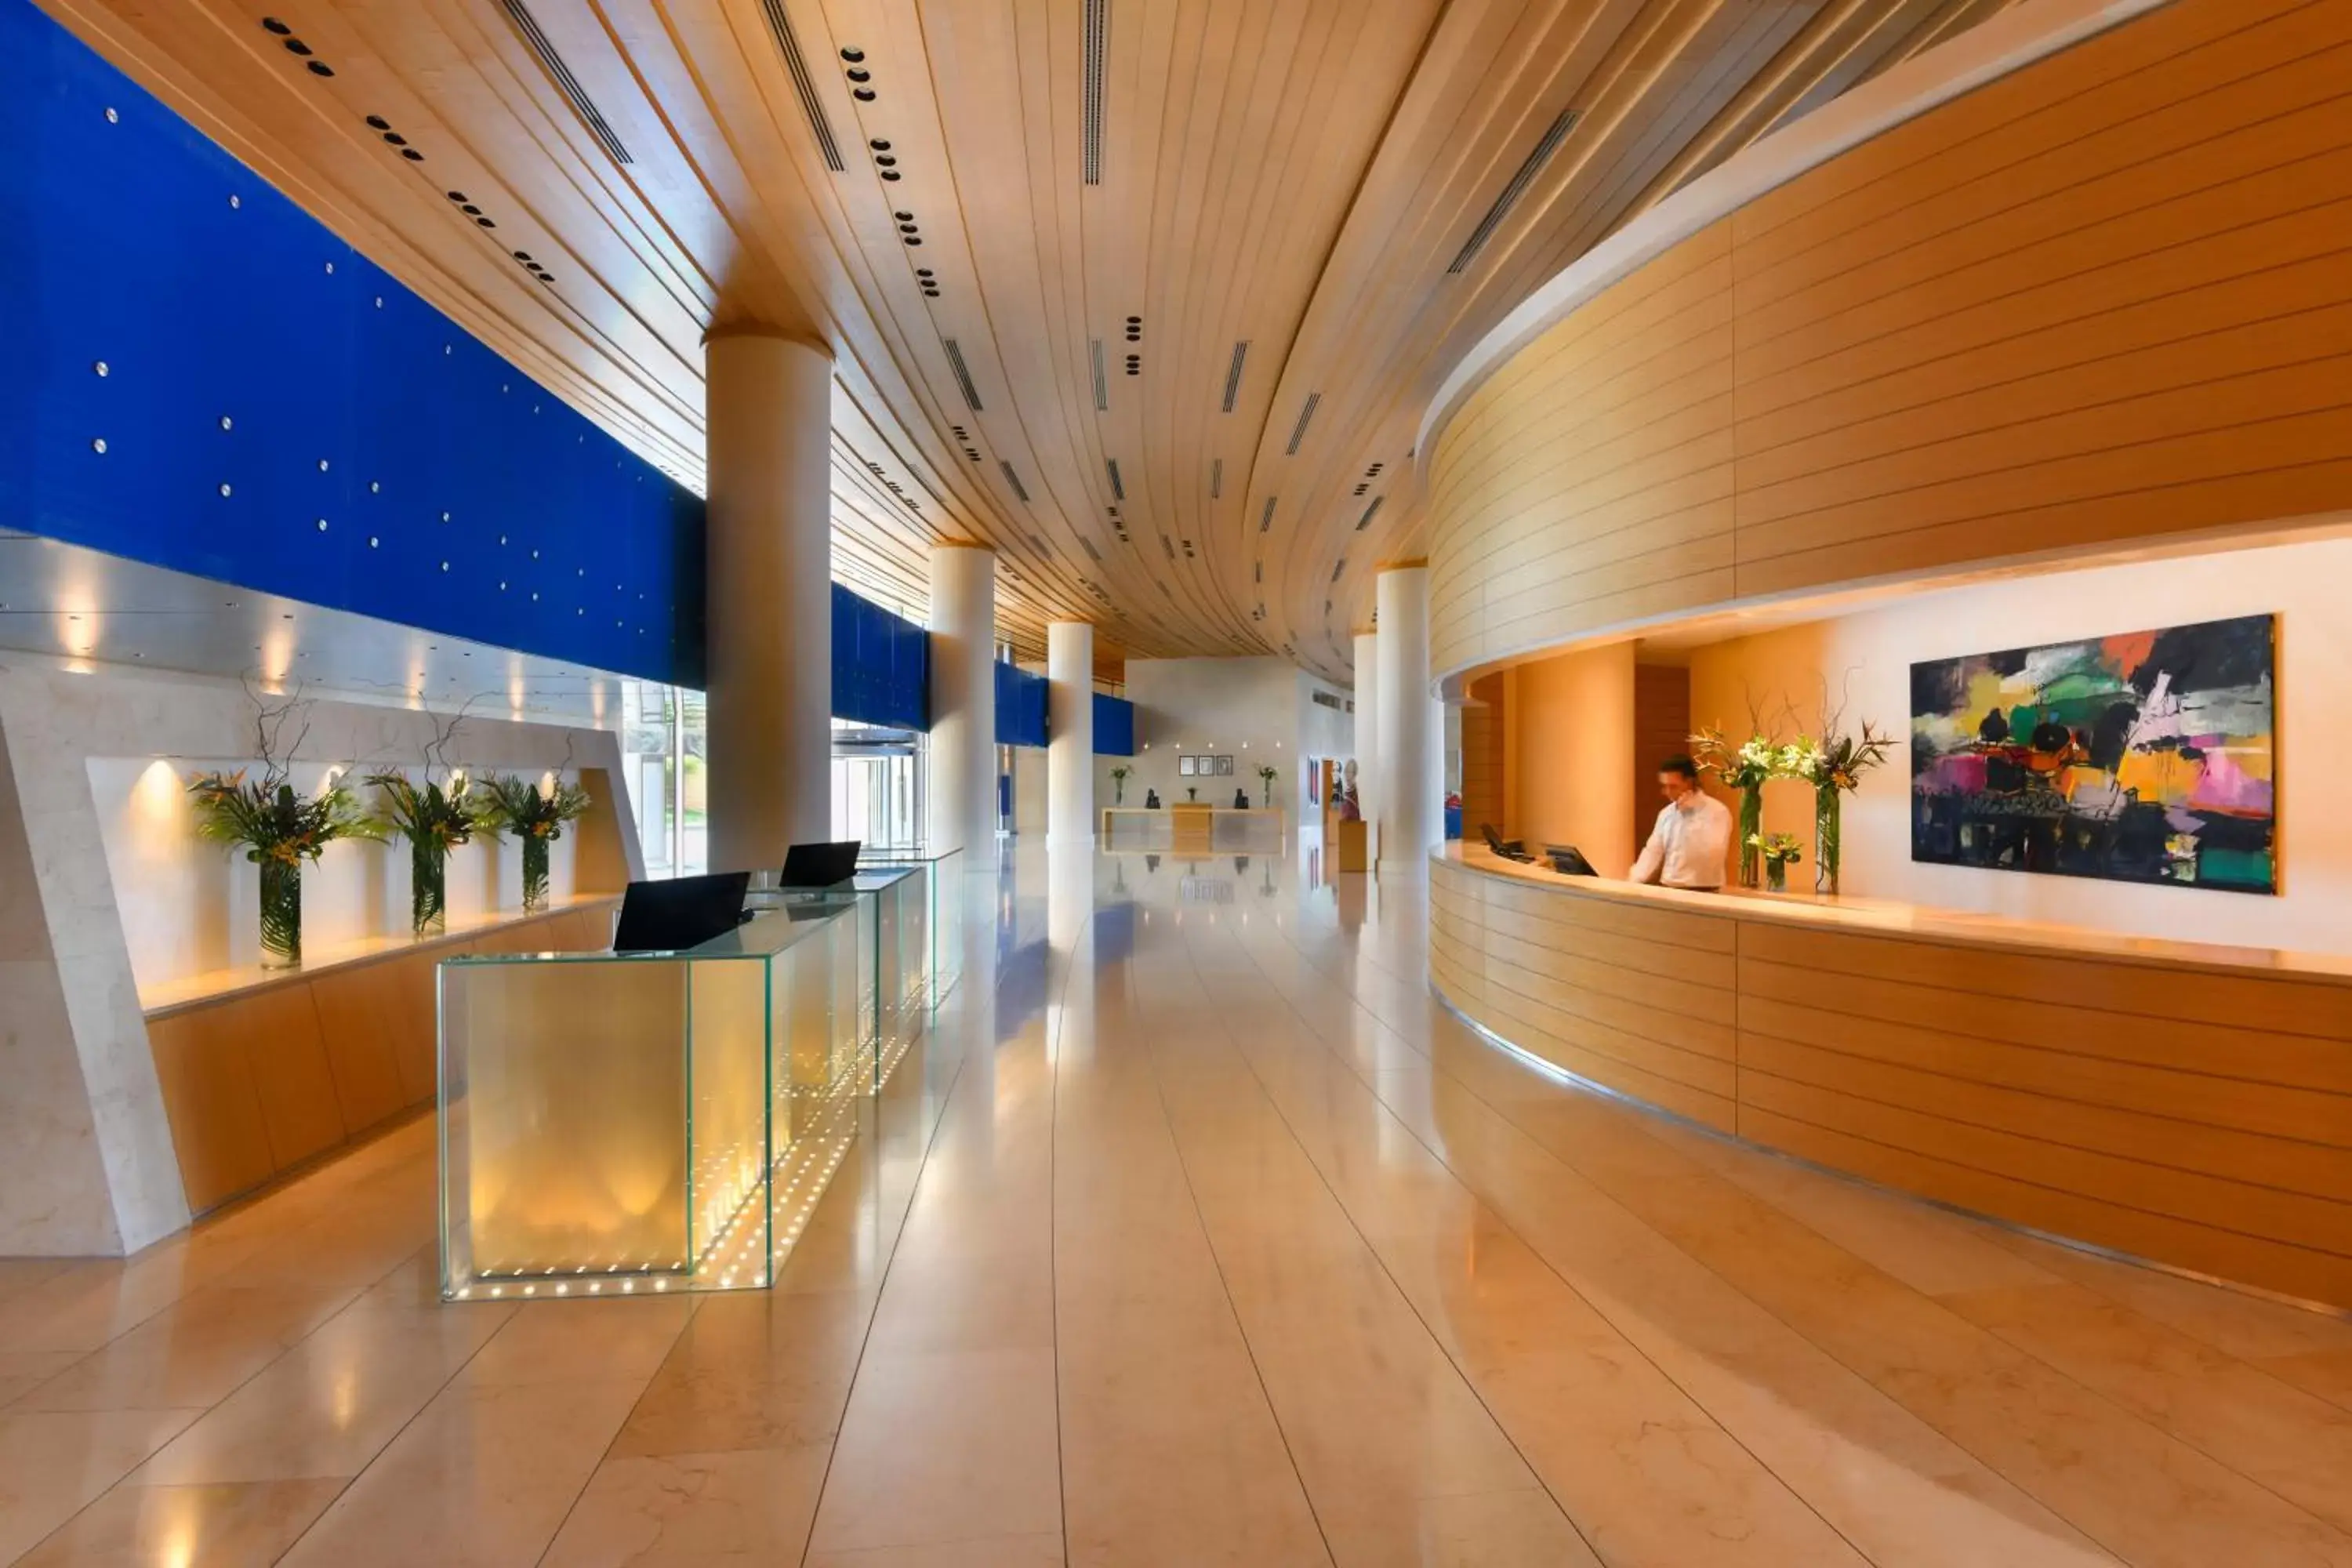 Lobby or reception in Kempinski Hotel Aqaba